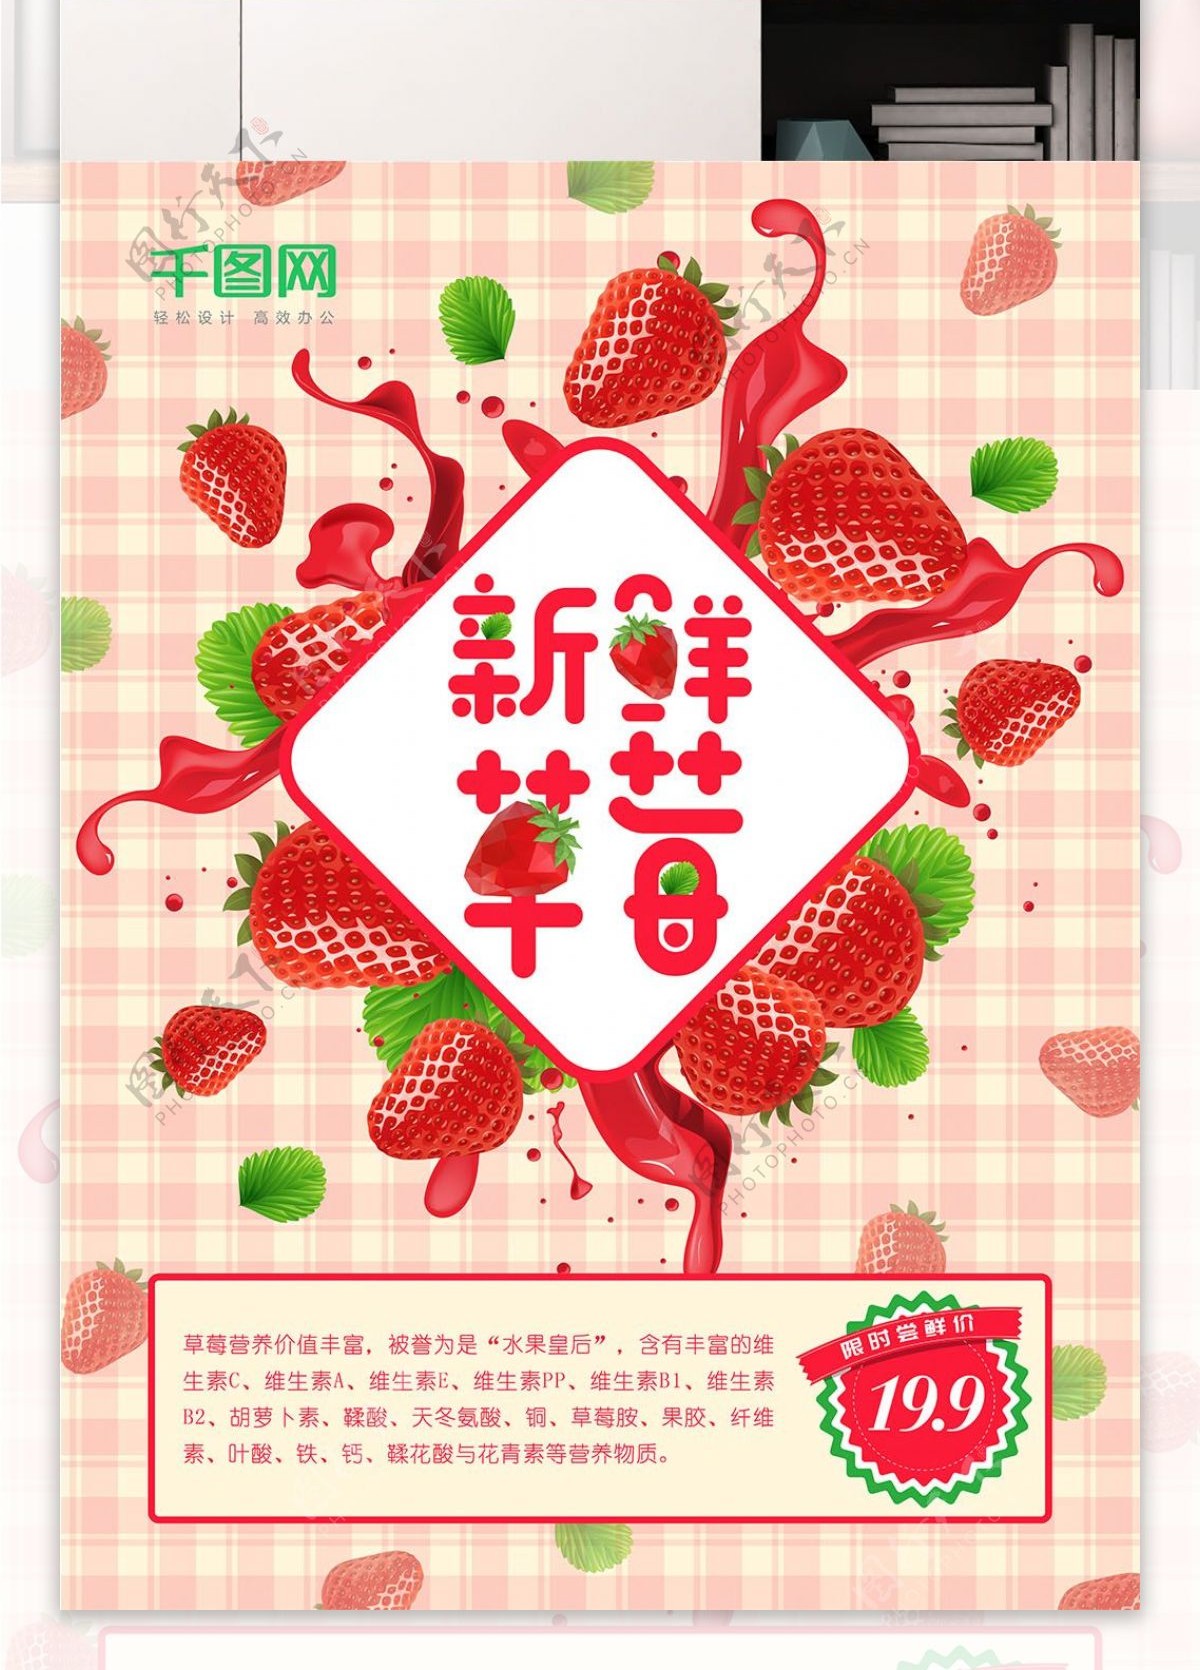 新鲜草莓限时尝鲜红色粉红色美食促销海报